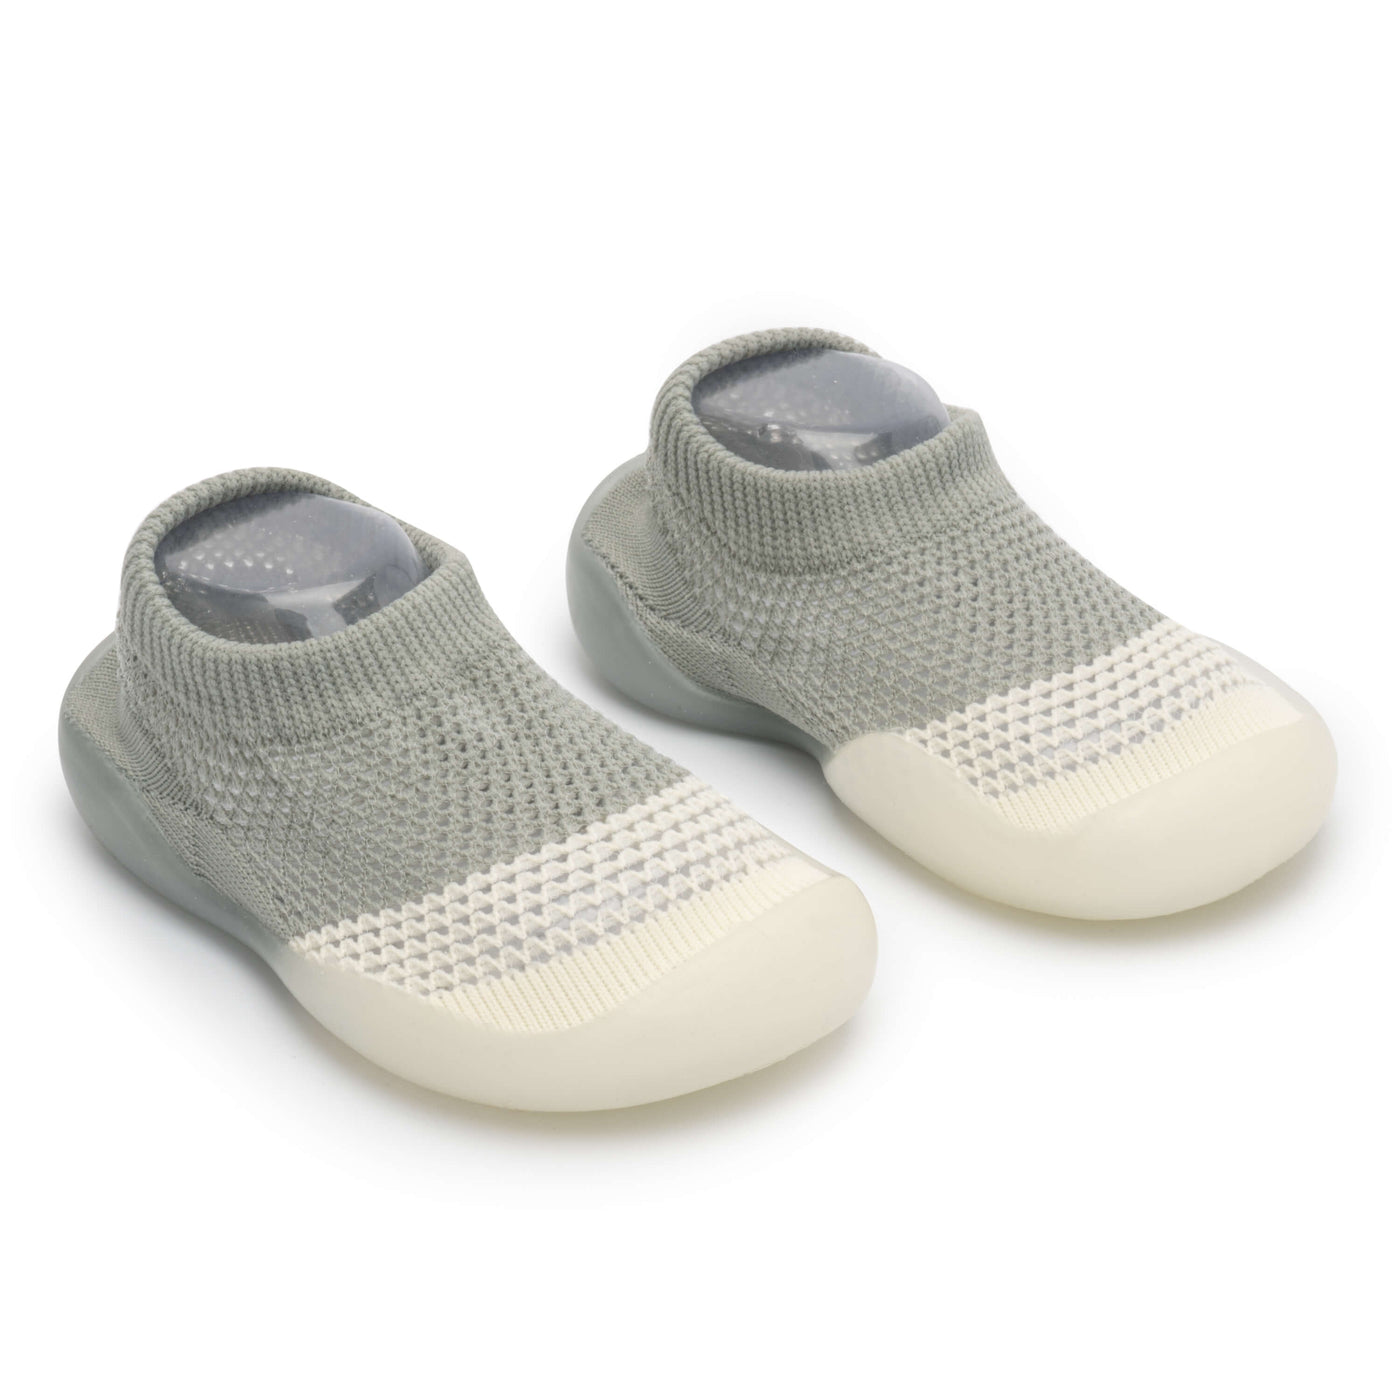 Baby Cotton Socks Floor Socks Toddler Shoes Non-Slip [Fox] Warm